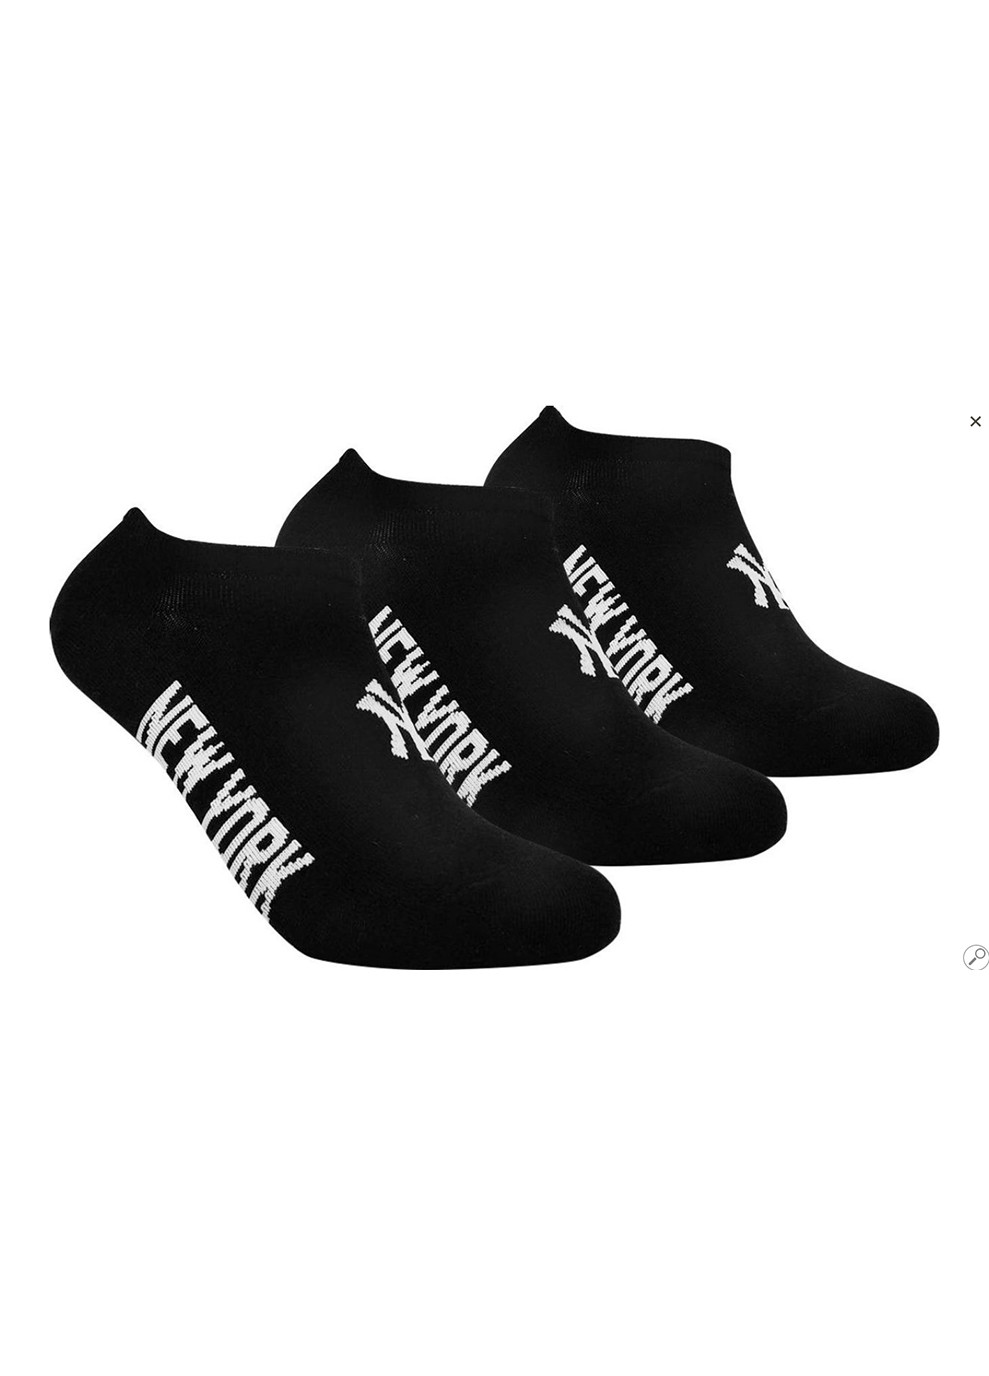 Шкарпетки Sneaker 3-pack 39-42 black 15100004-1002 New York Yankees (253683875)